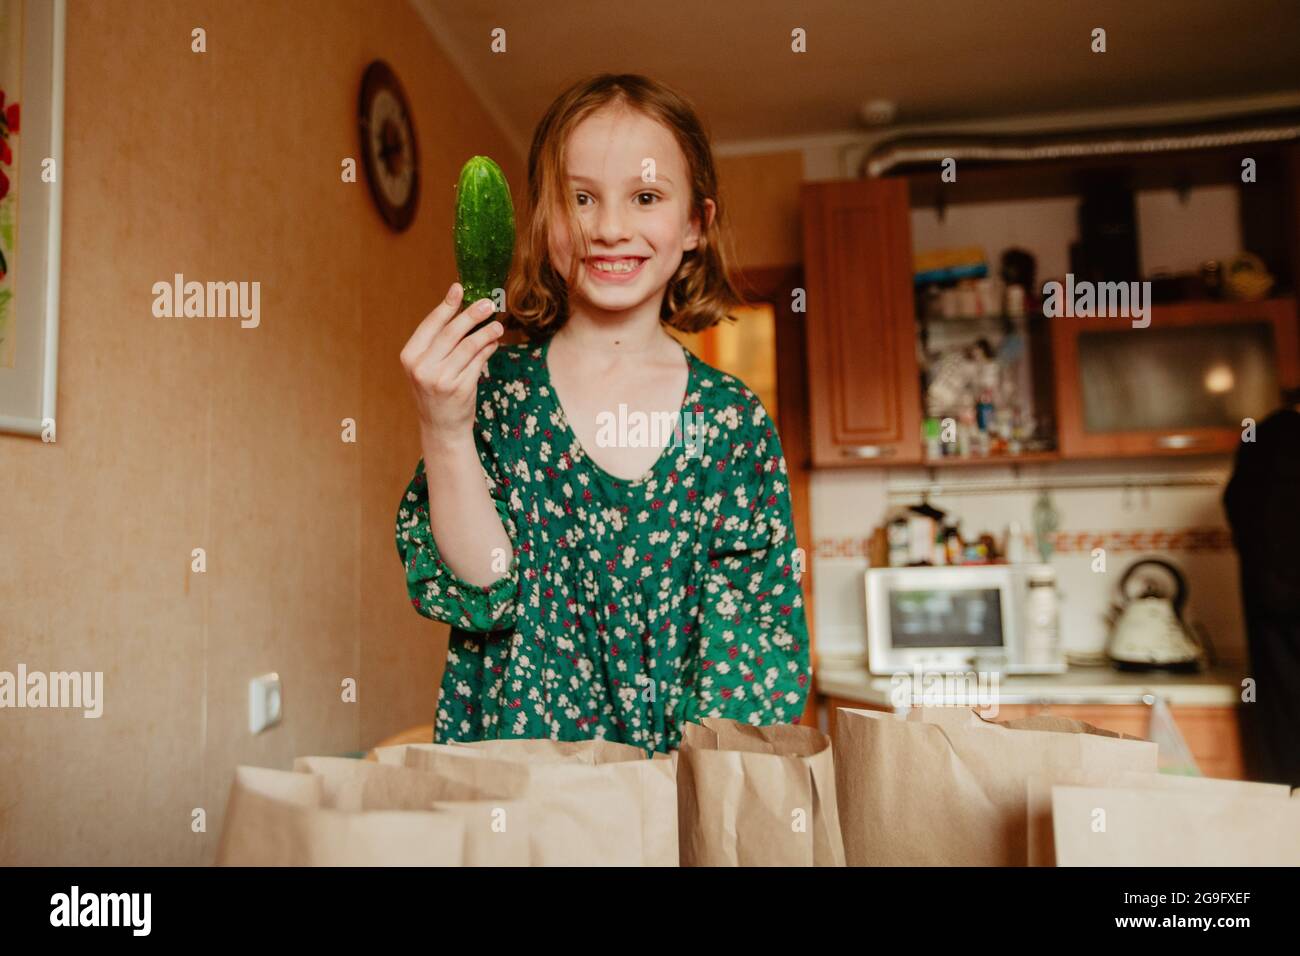 Fröhliches Mädchen in grünem Kleid, das reife Gurken zeigt und die Kamera anschaut, während es in der Küche steht Stockfoto